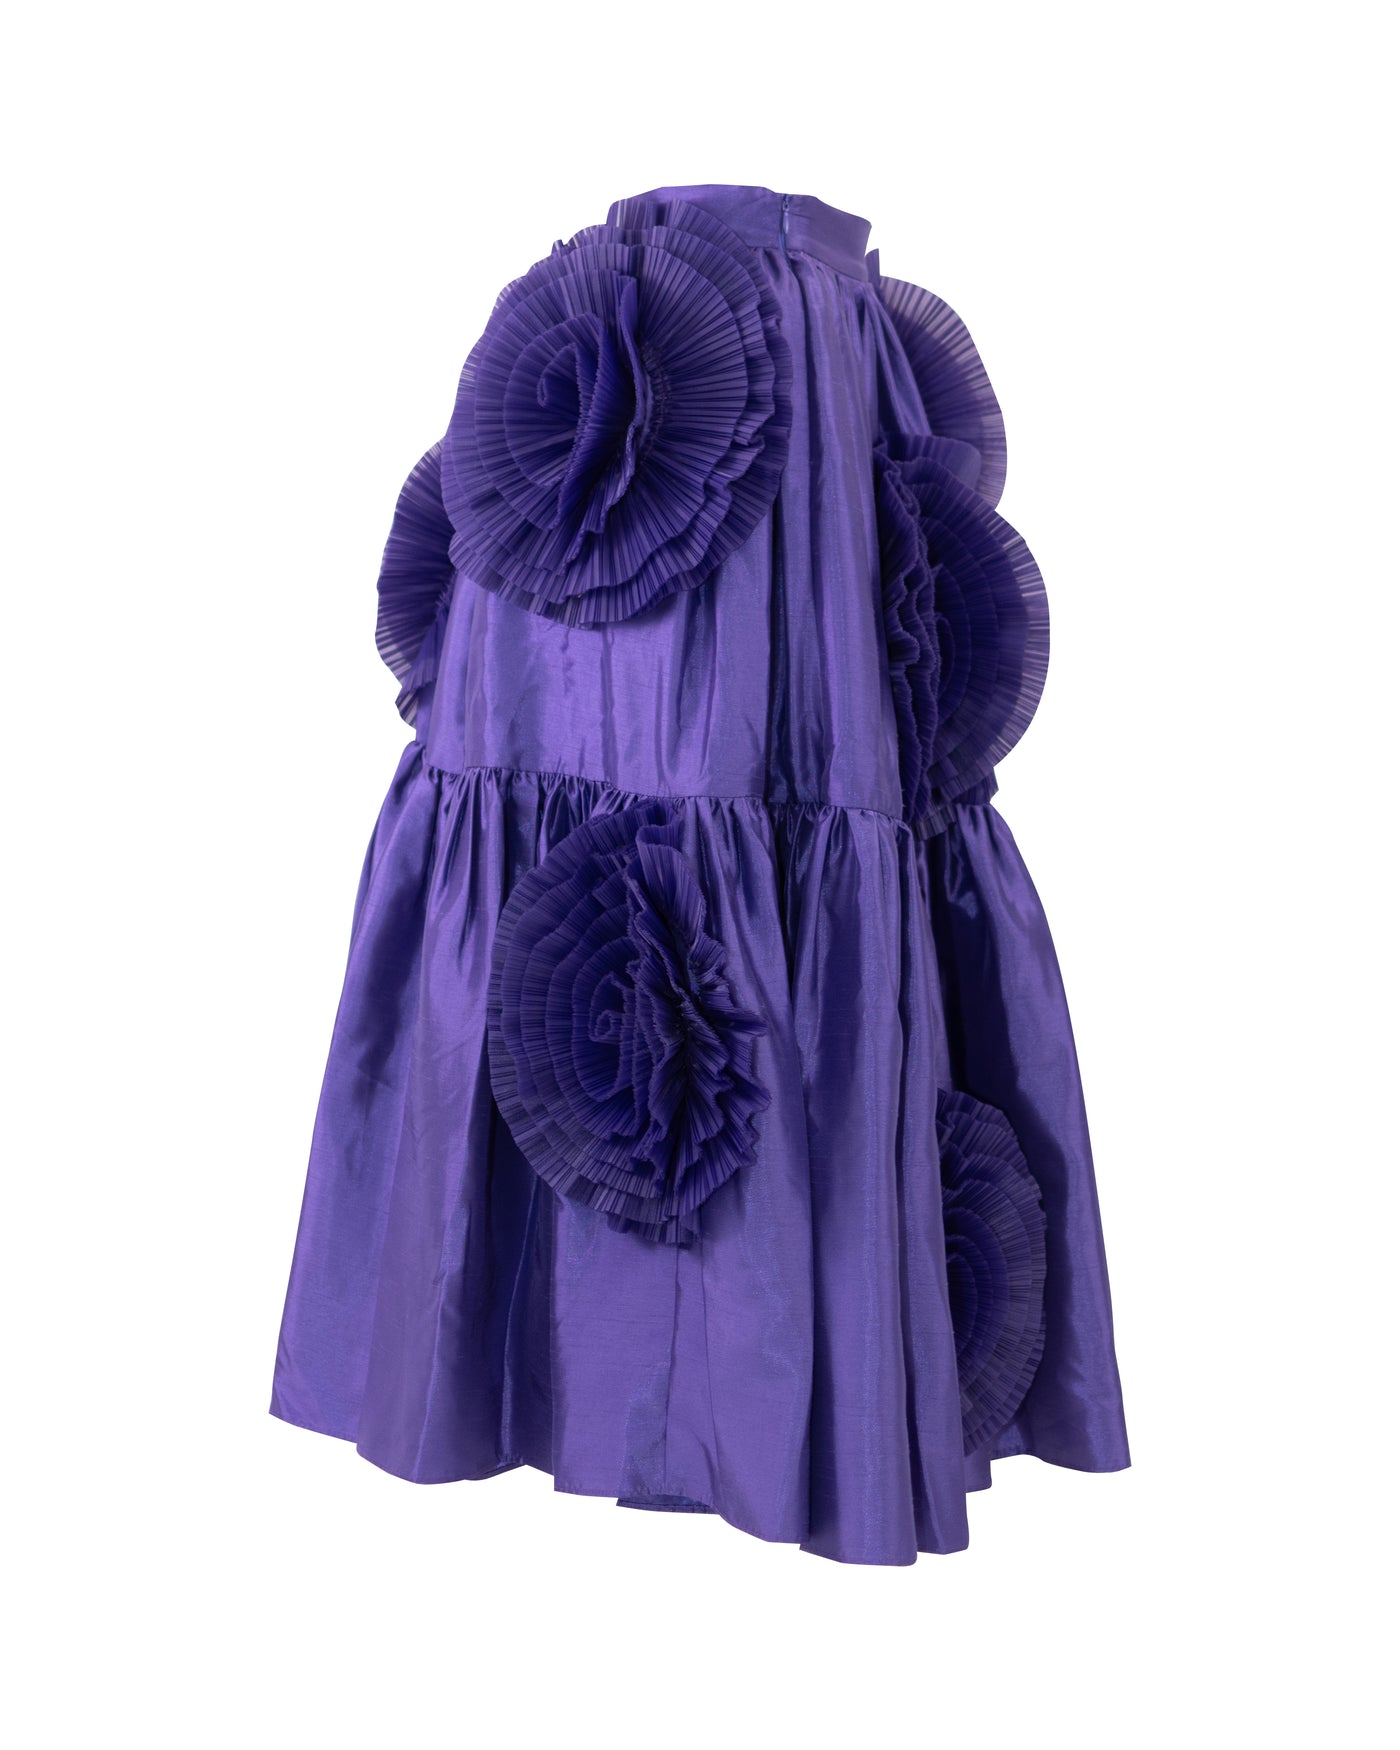 Lilac - Skirt